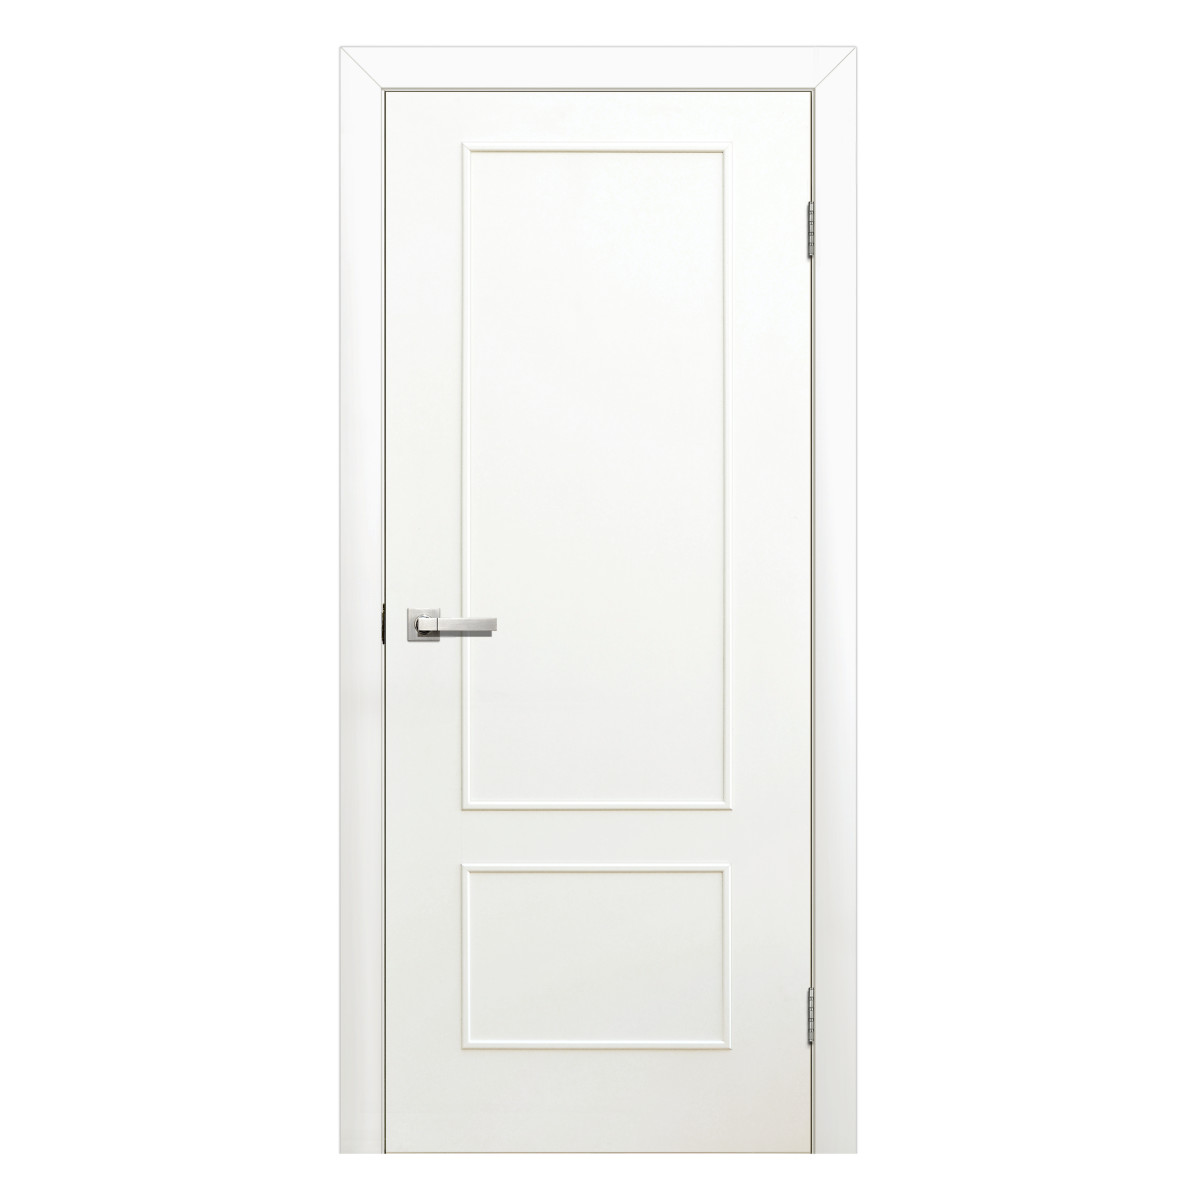 Дверь межкомнатная глухая ламинированная Классика 60x200 см цвет белый